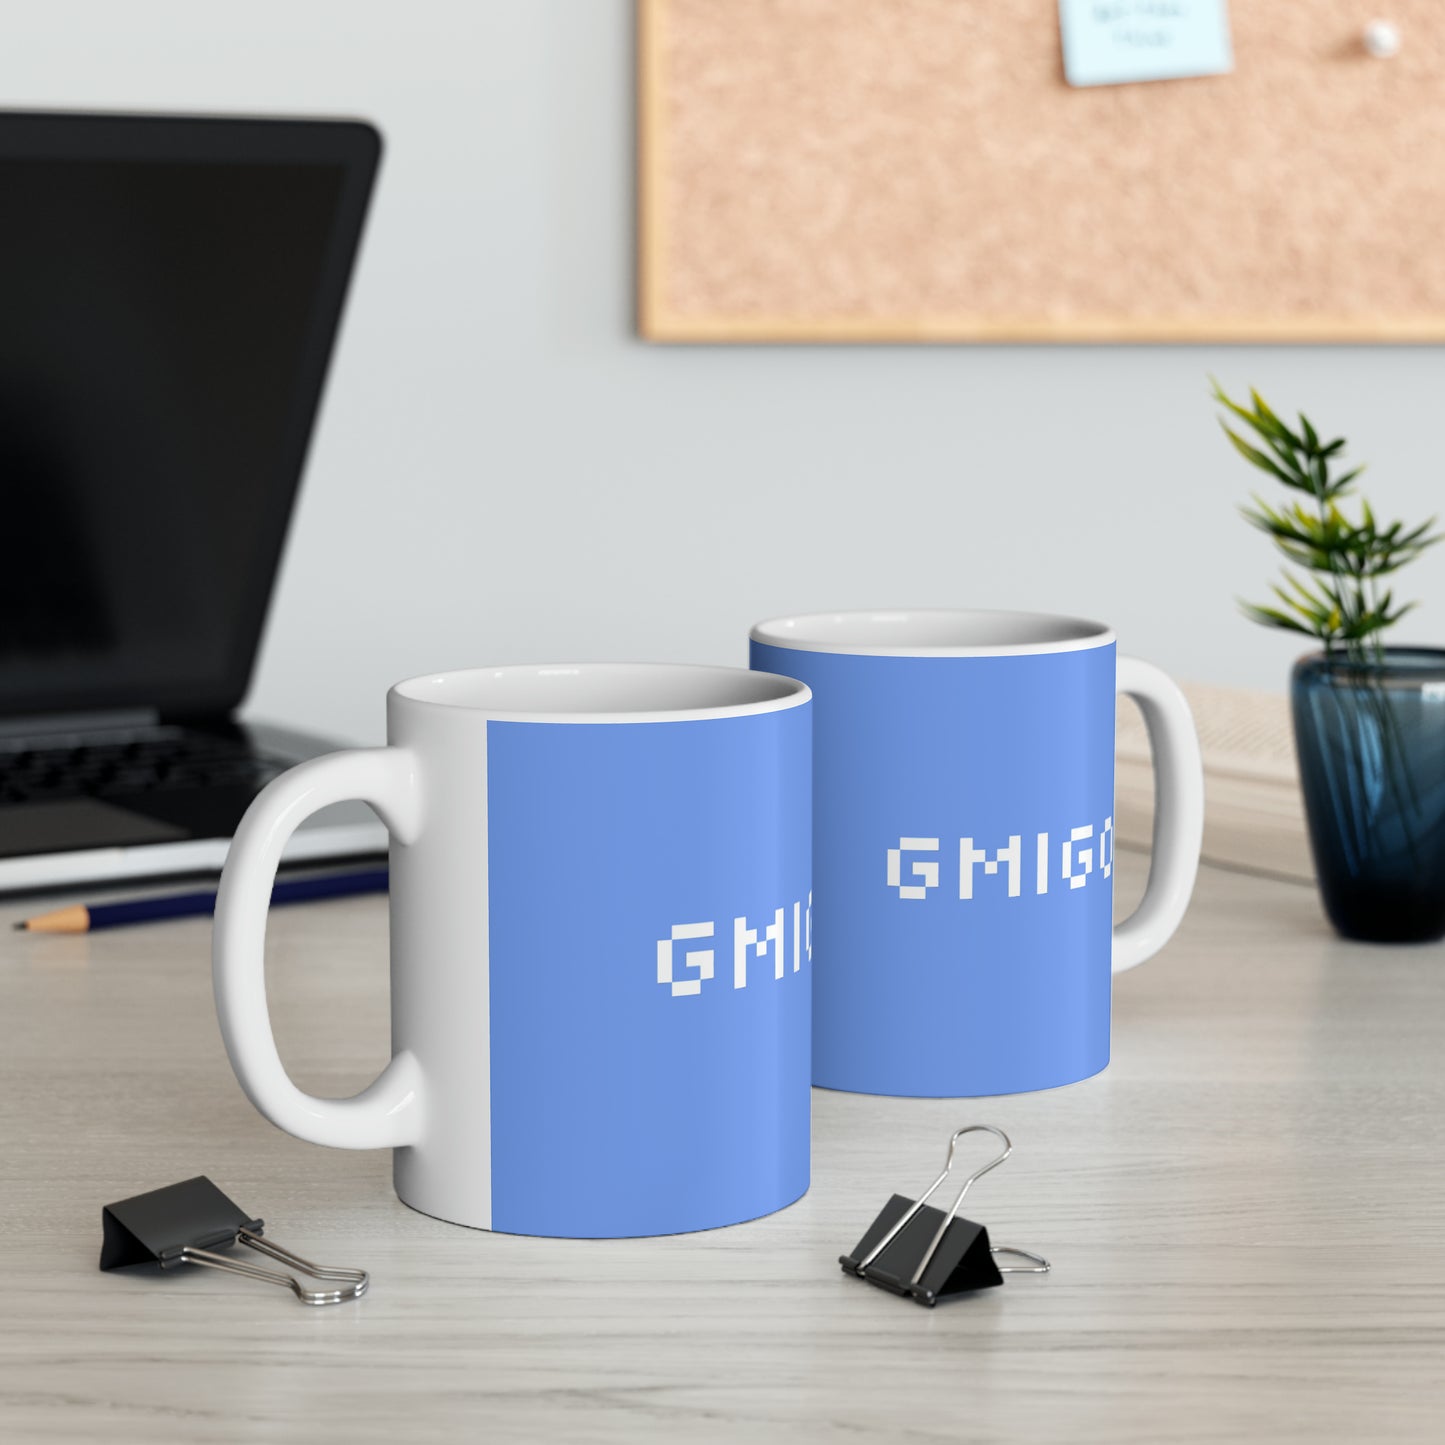 GMIGO - Ceramic Mug 11oz